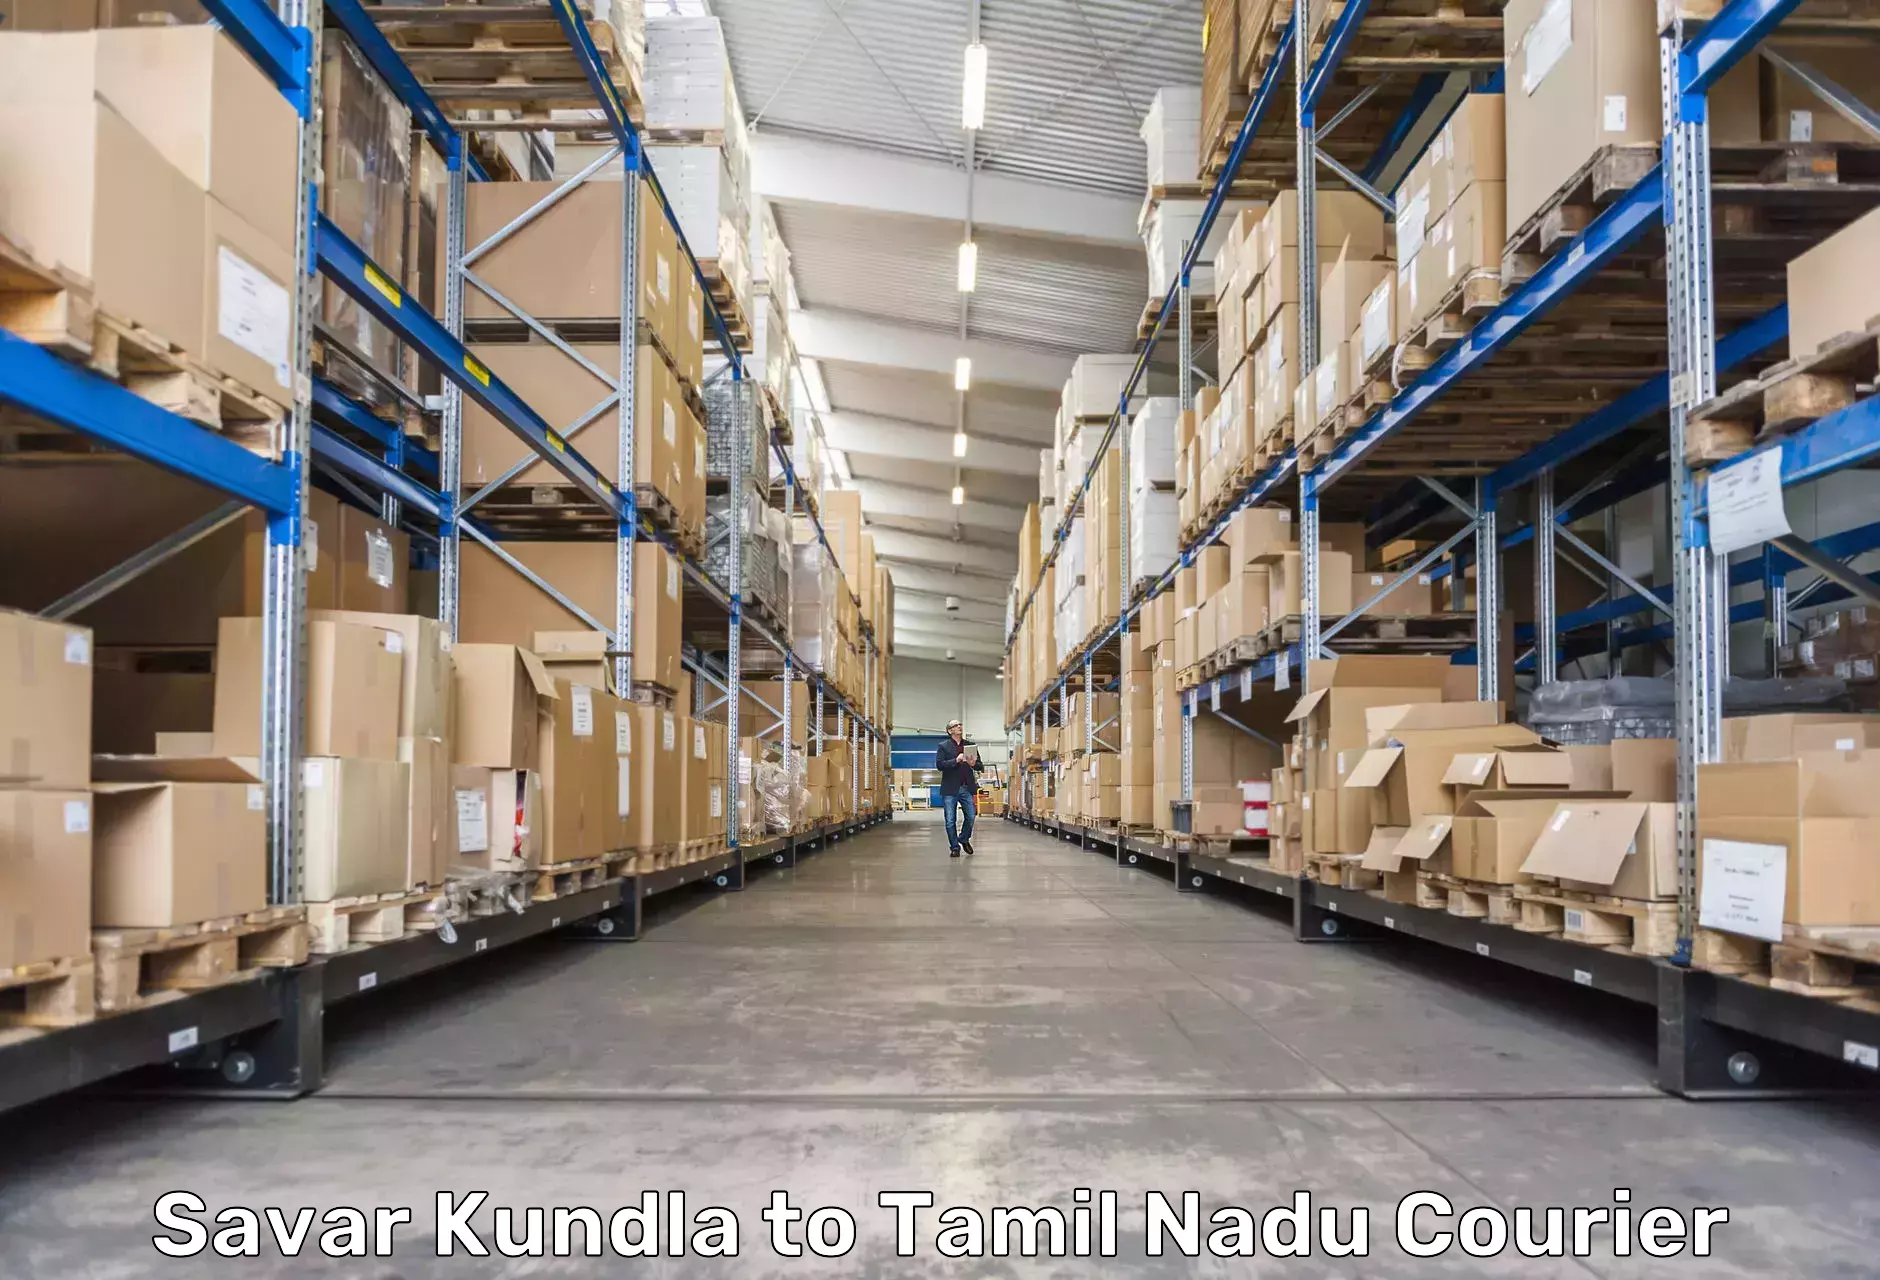 Global parcel delivery Savar Kundla to Avinashi